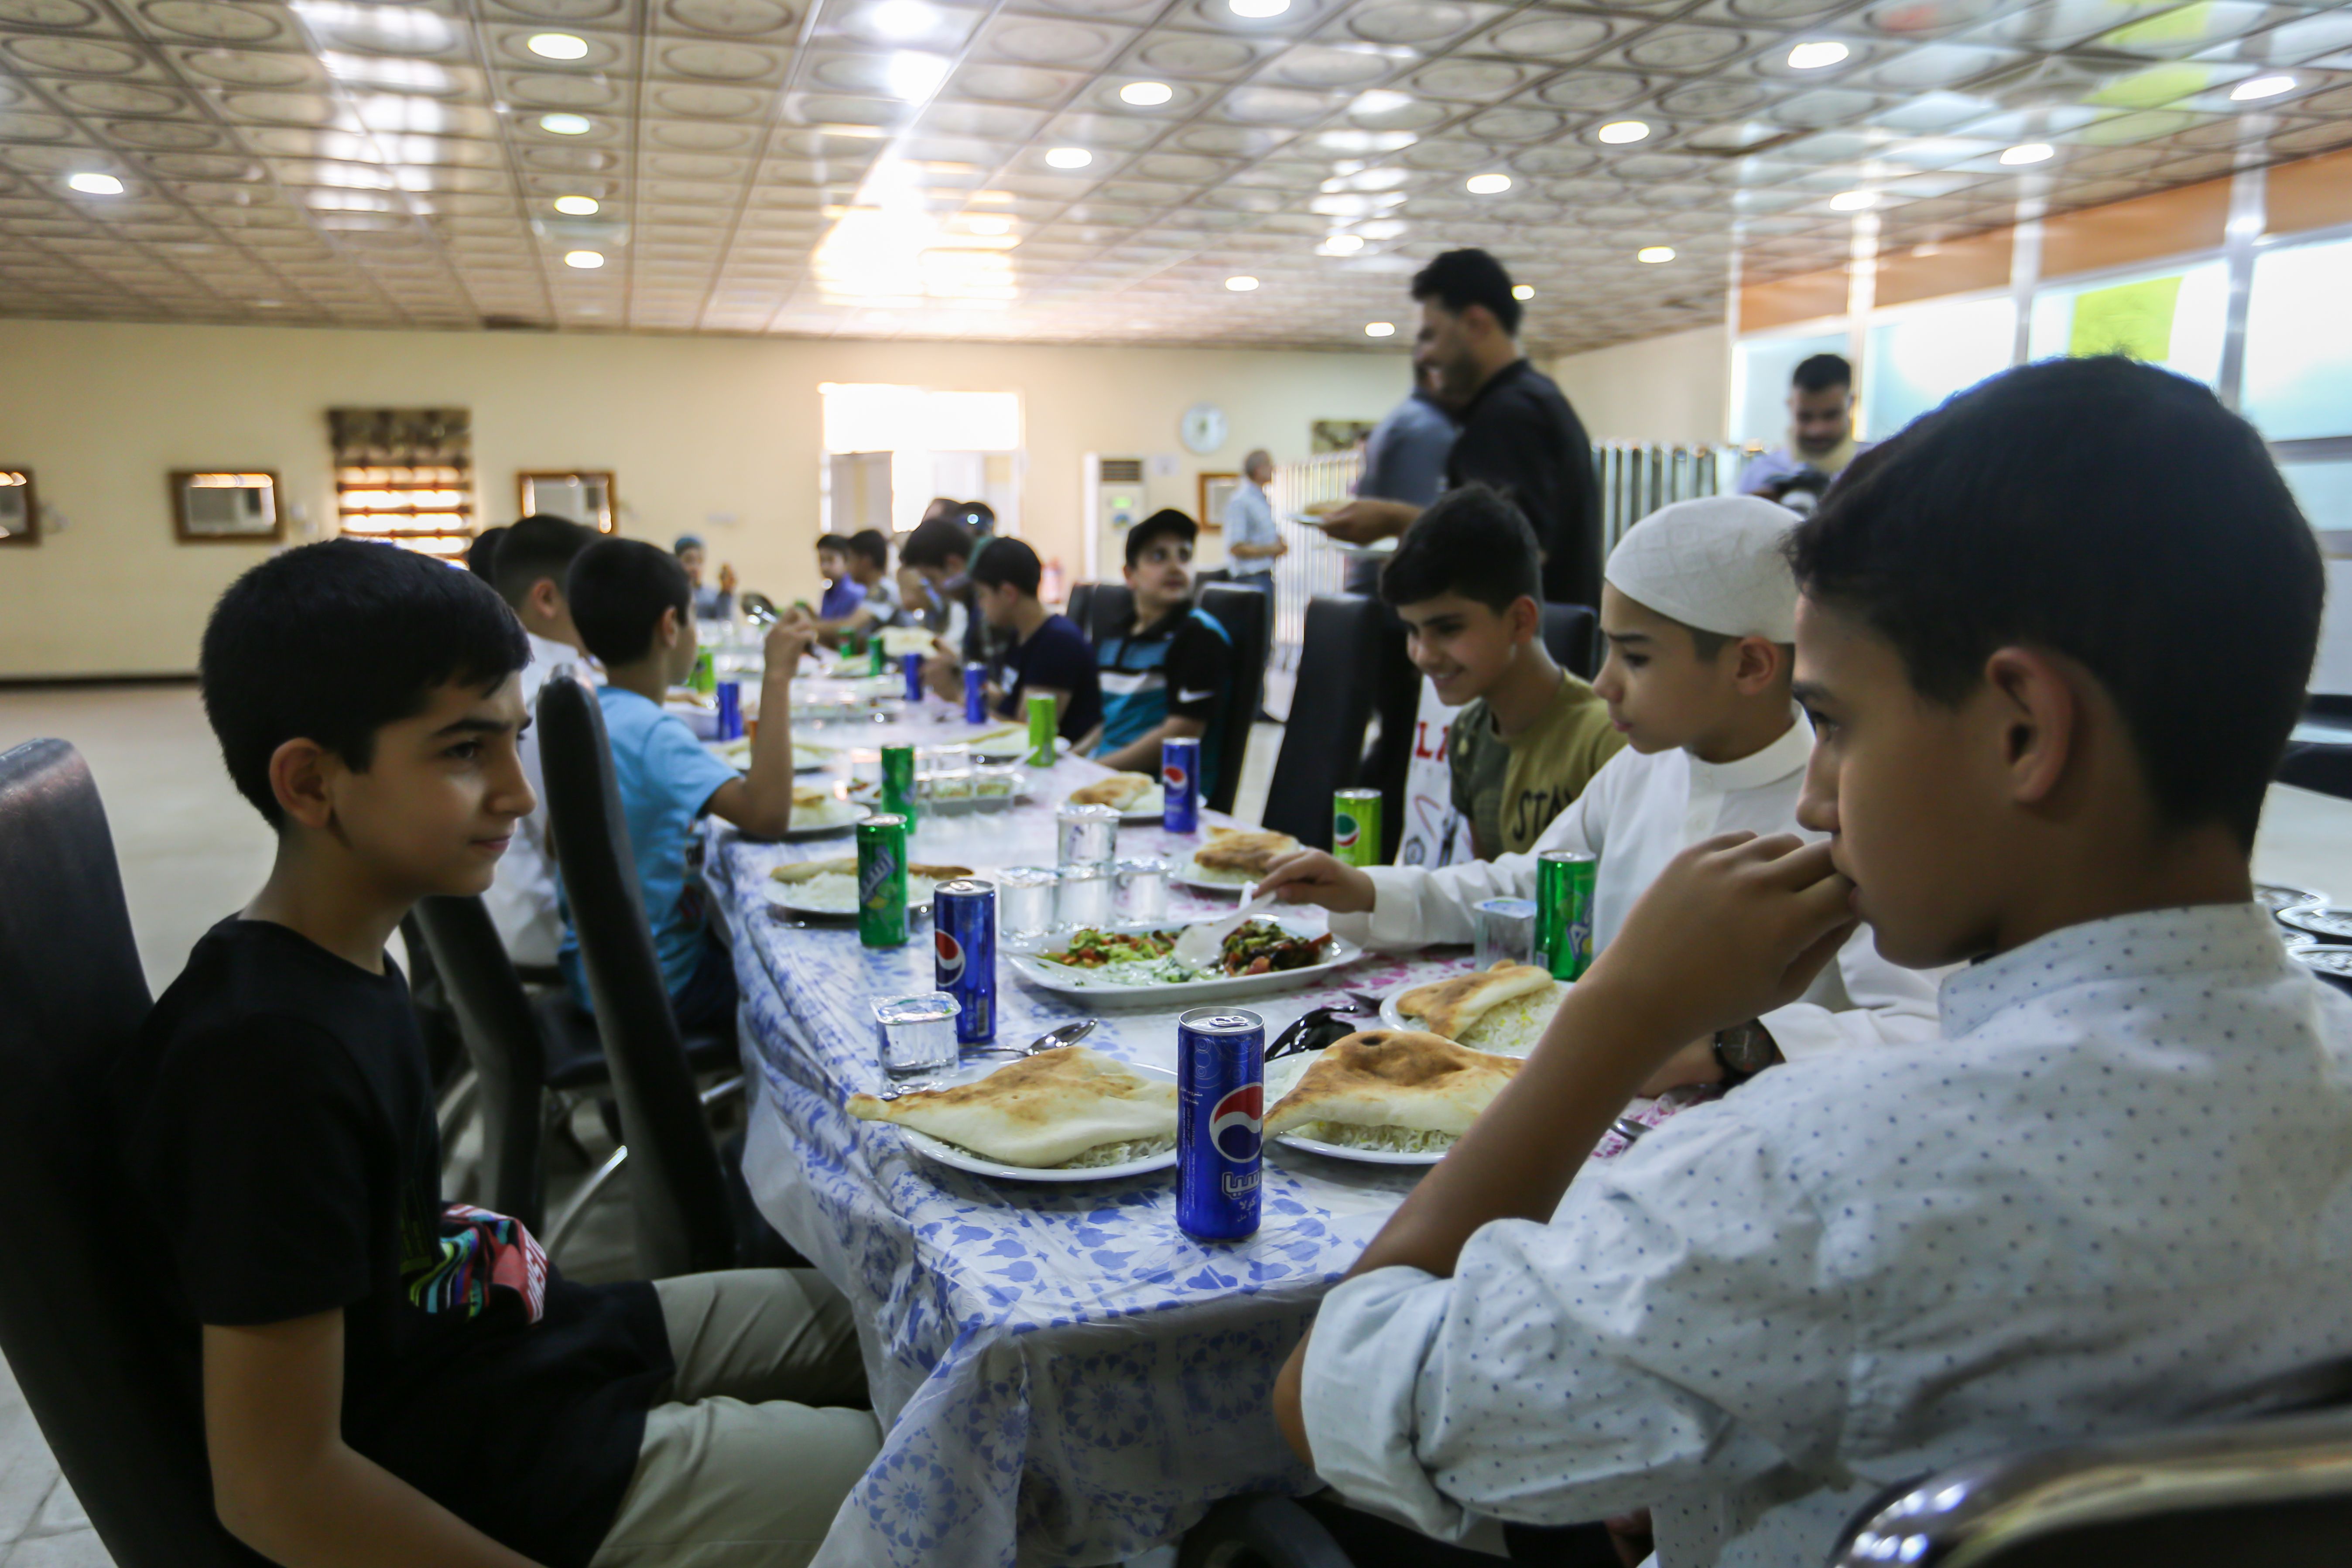 معهد القرآن الكريم فرع بغداد يقيم برنامجًا دينيًا وترفيهيًا لطلبة حفظ الكتاب العزيز